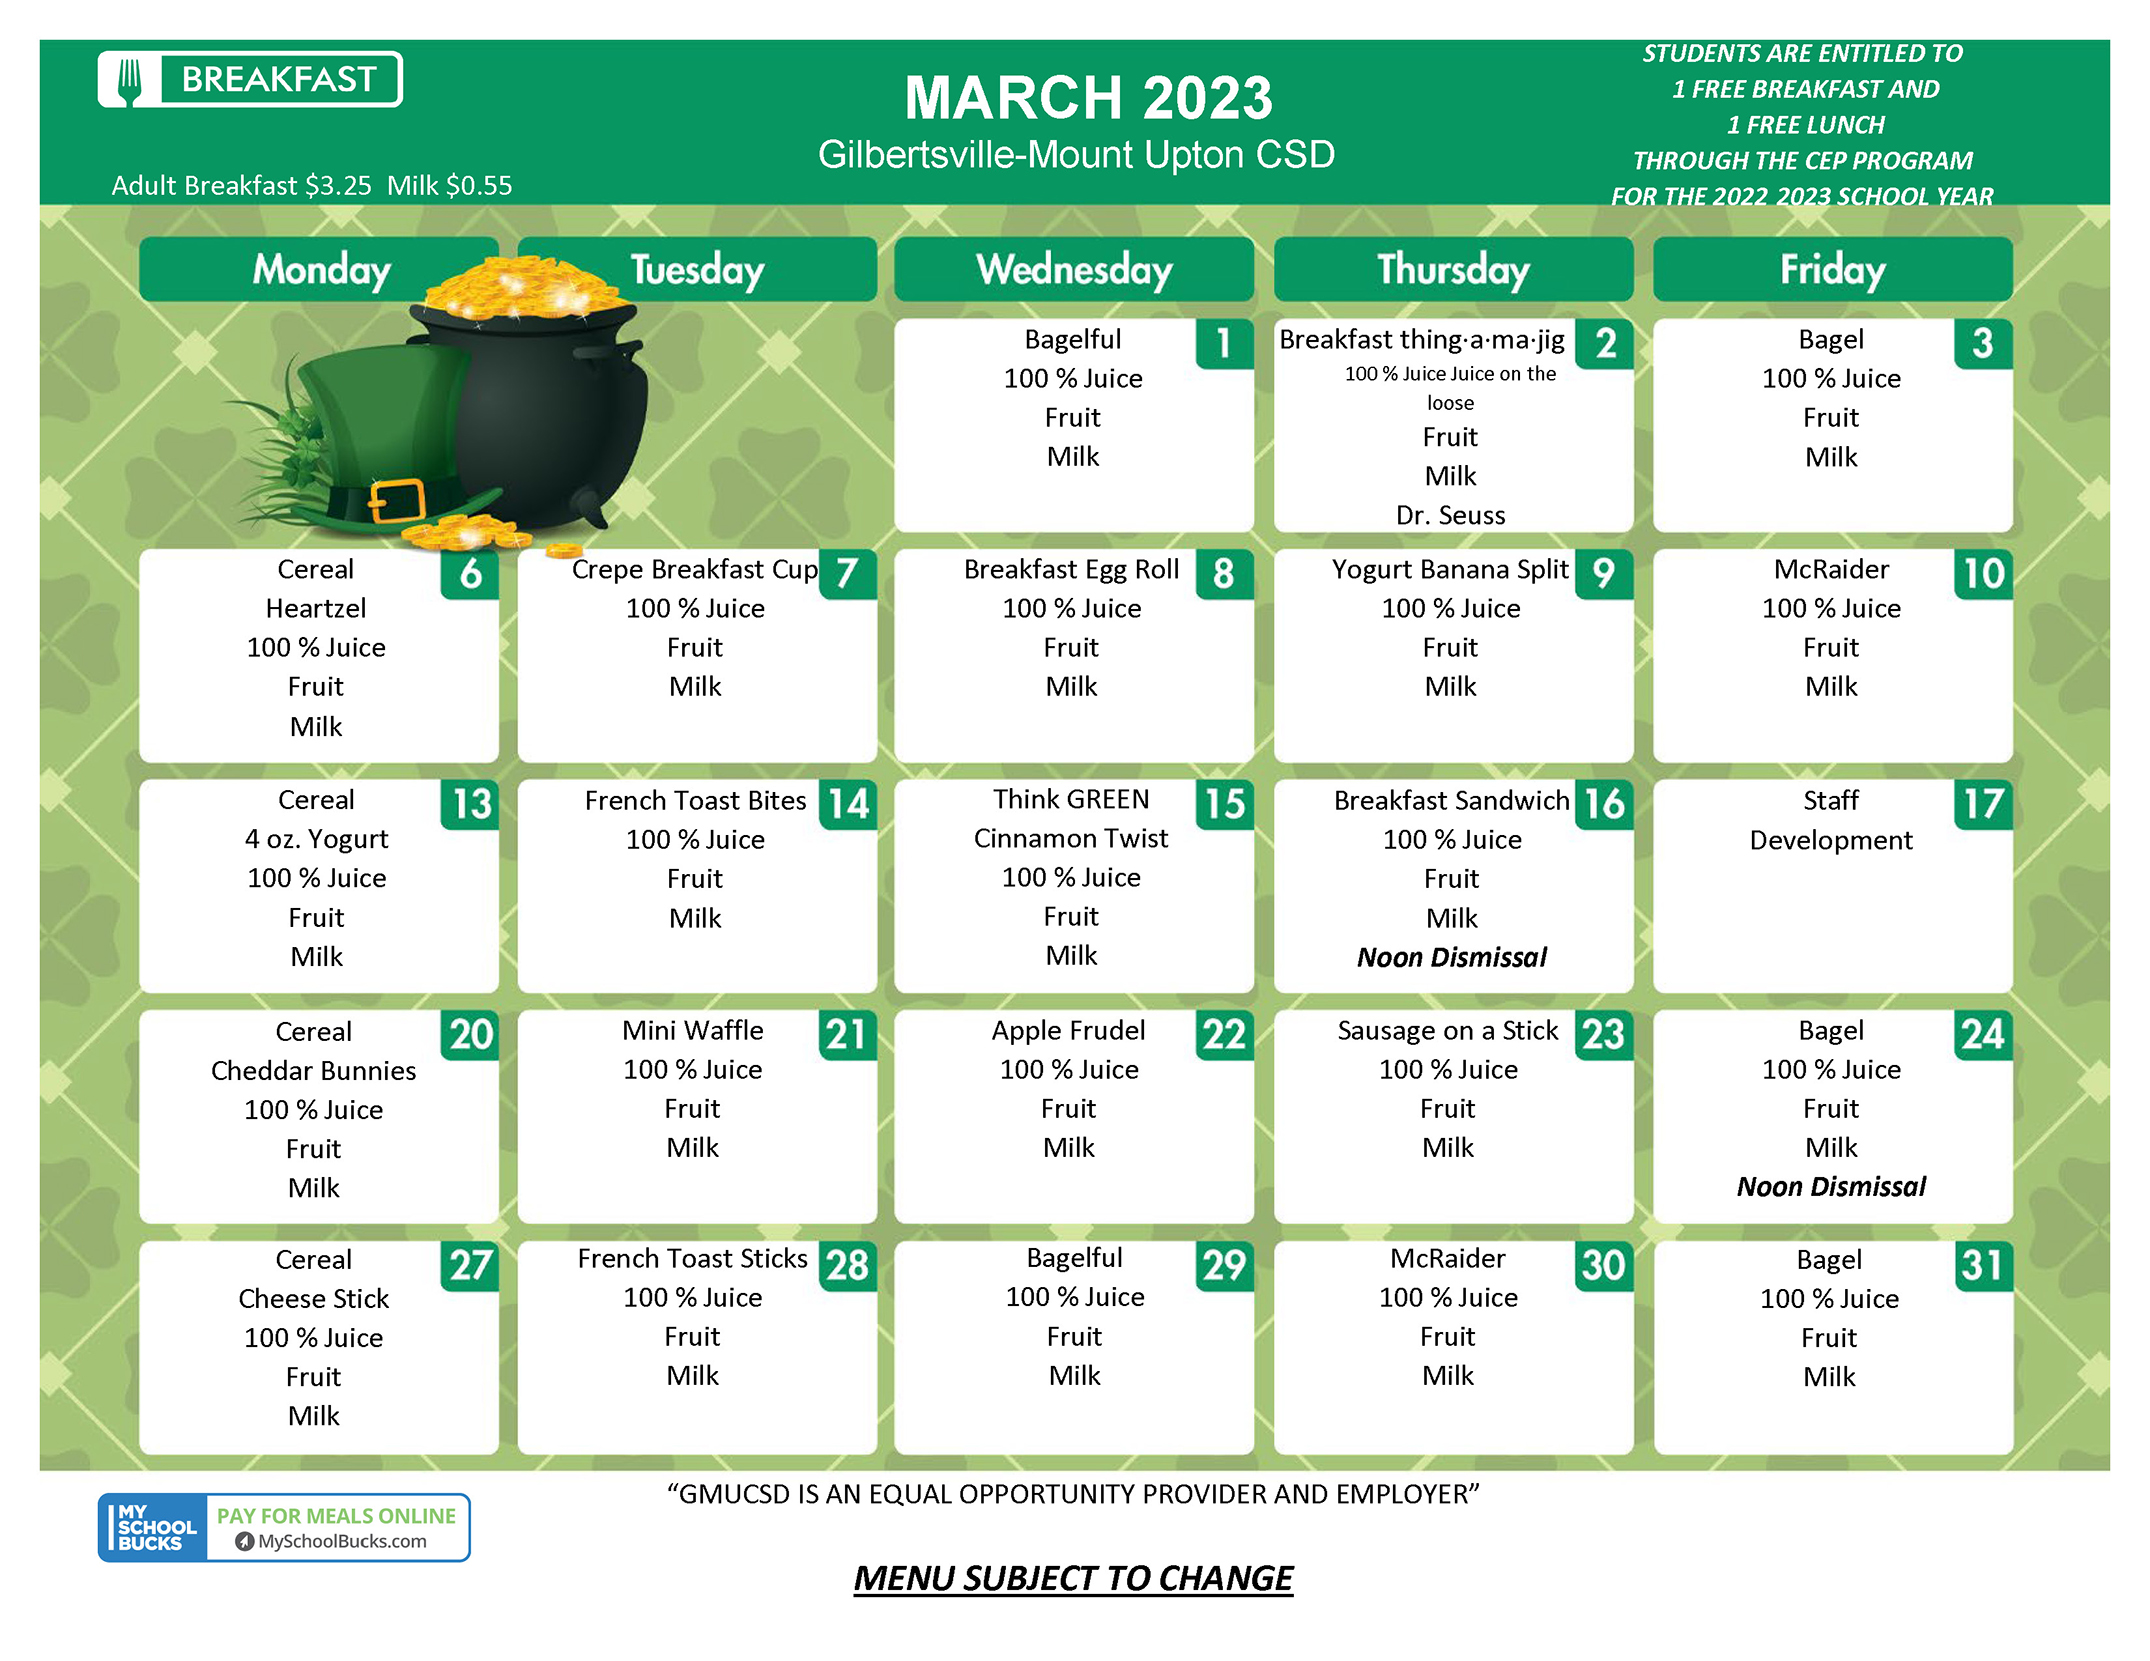 GMU Breakfast Menu - March 2023